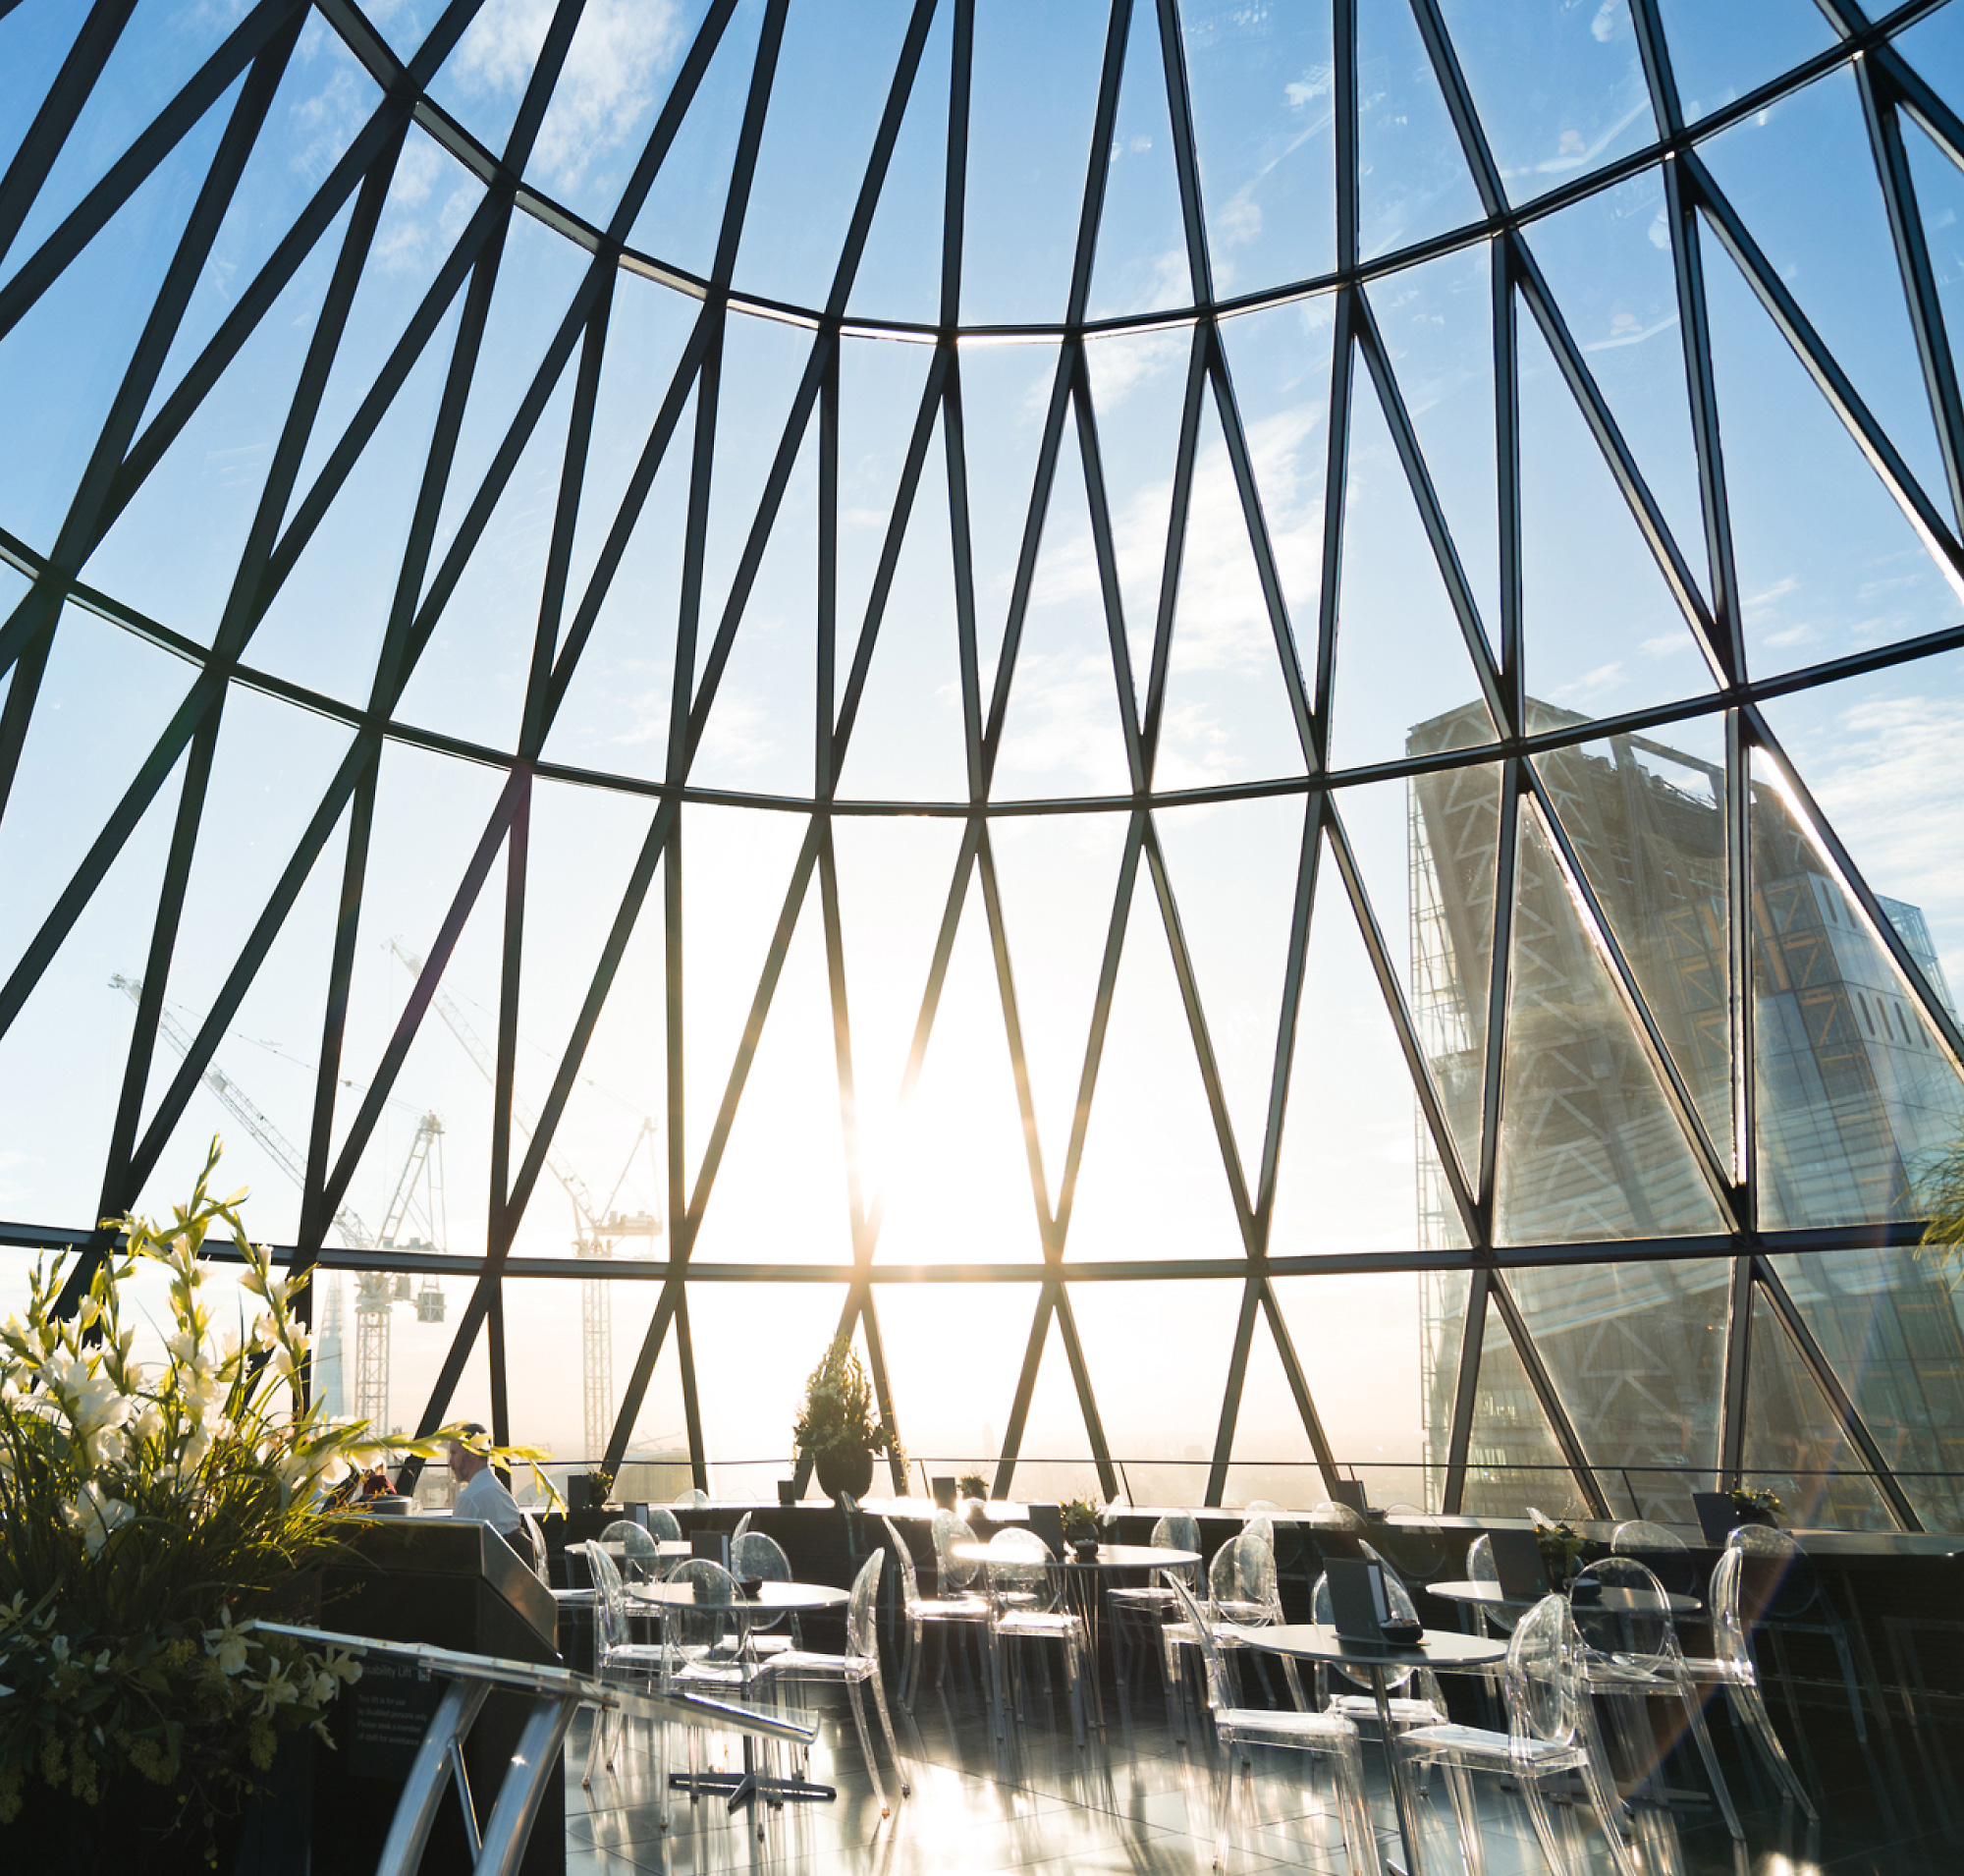 Flujos de luz solar a través de una gran domo de cristal geométrico que pasa por alto un paisaje urbano, iluminando una zona de restauración interior 